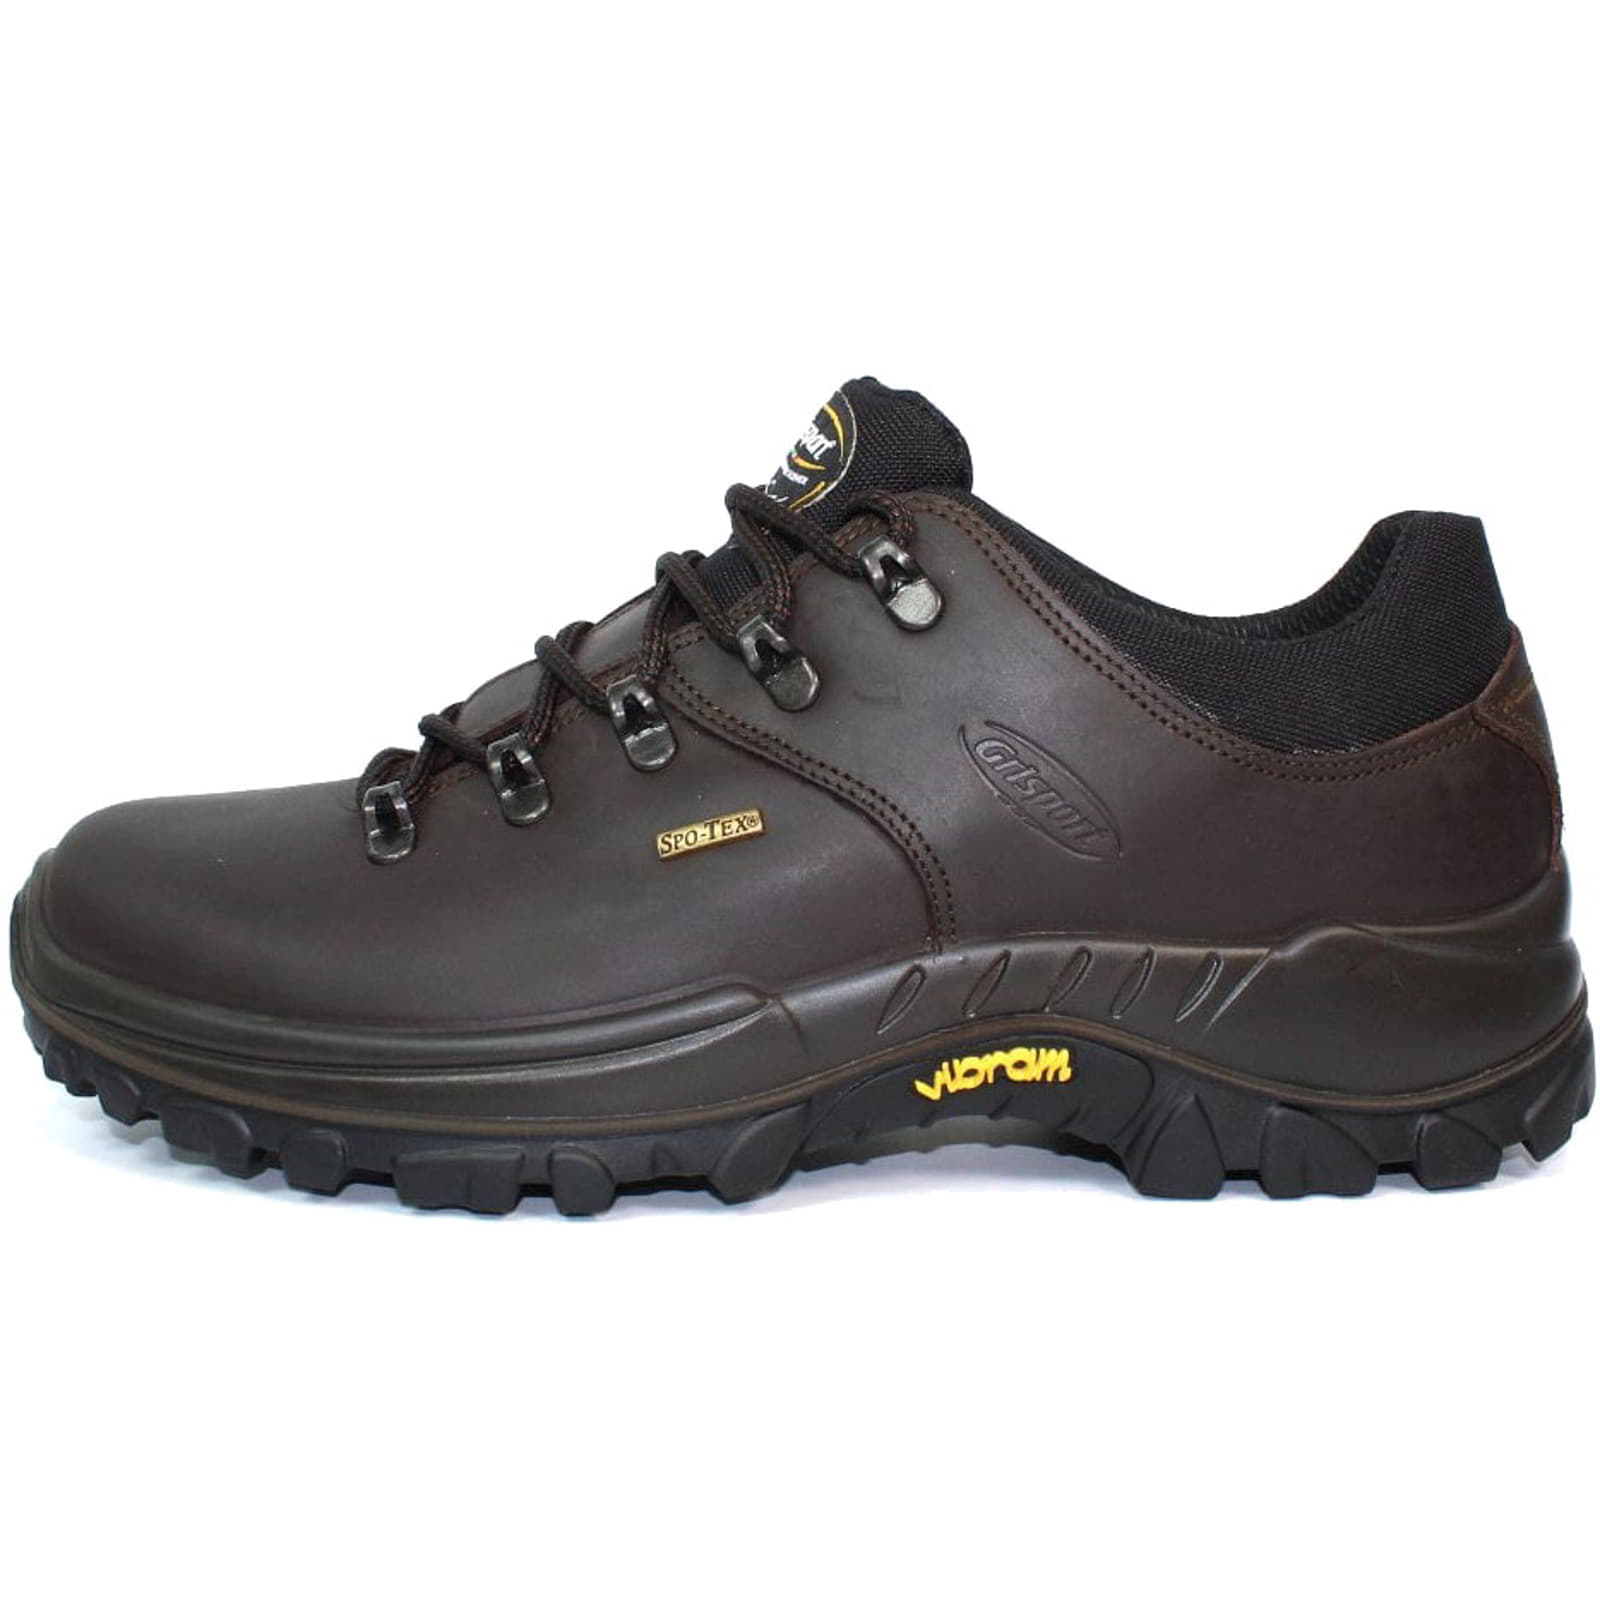 Grisport Mens Dartmoor Leather Walking Shoes - UK 7 / EU 41 Brown 2951